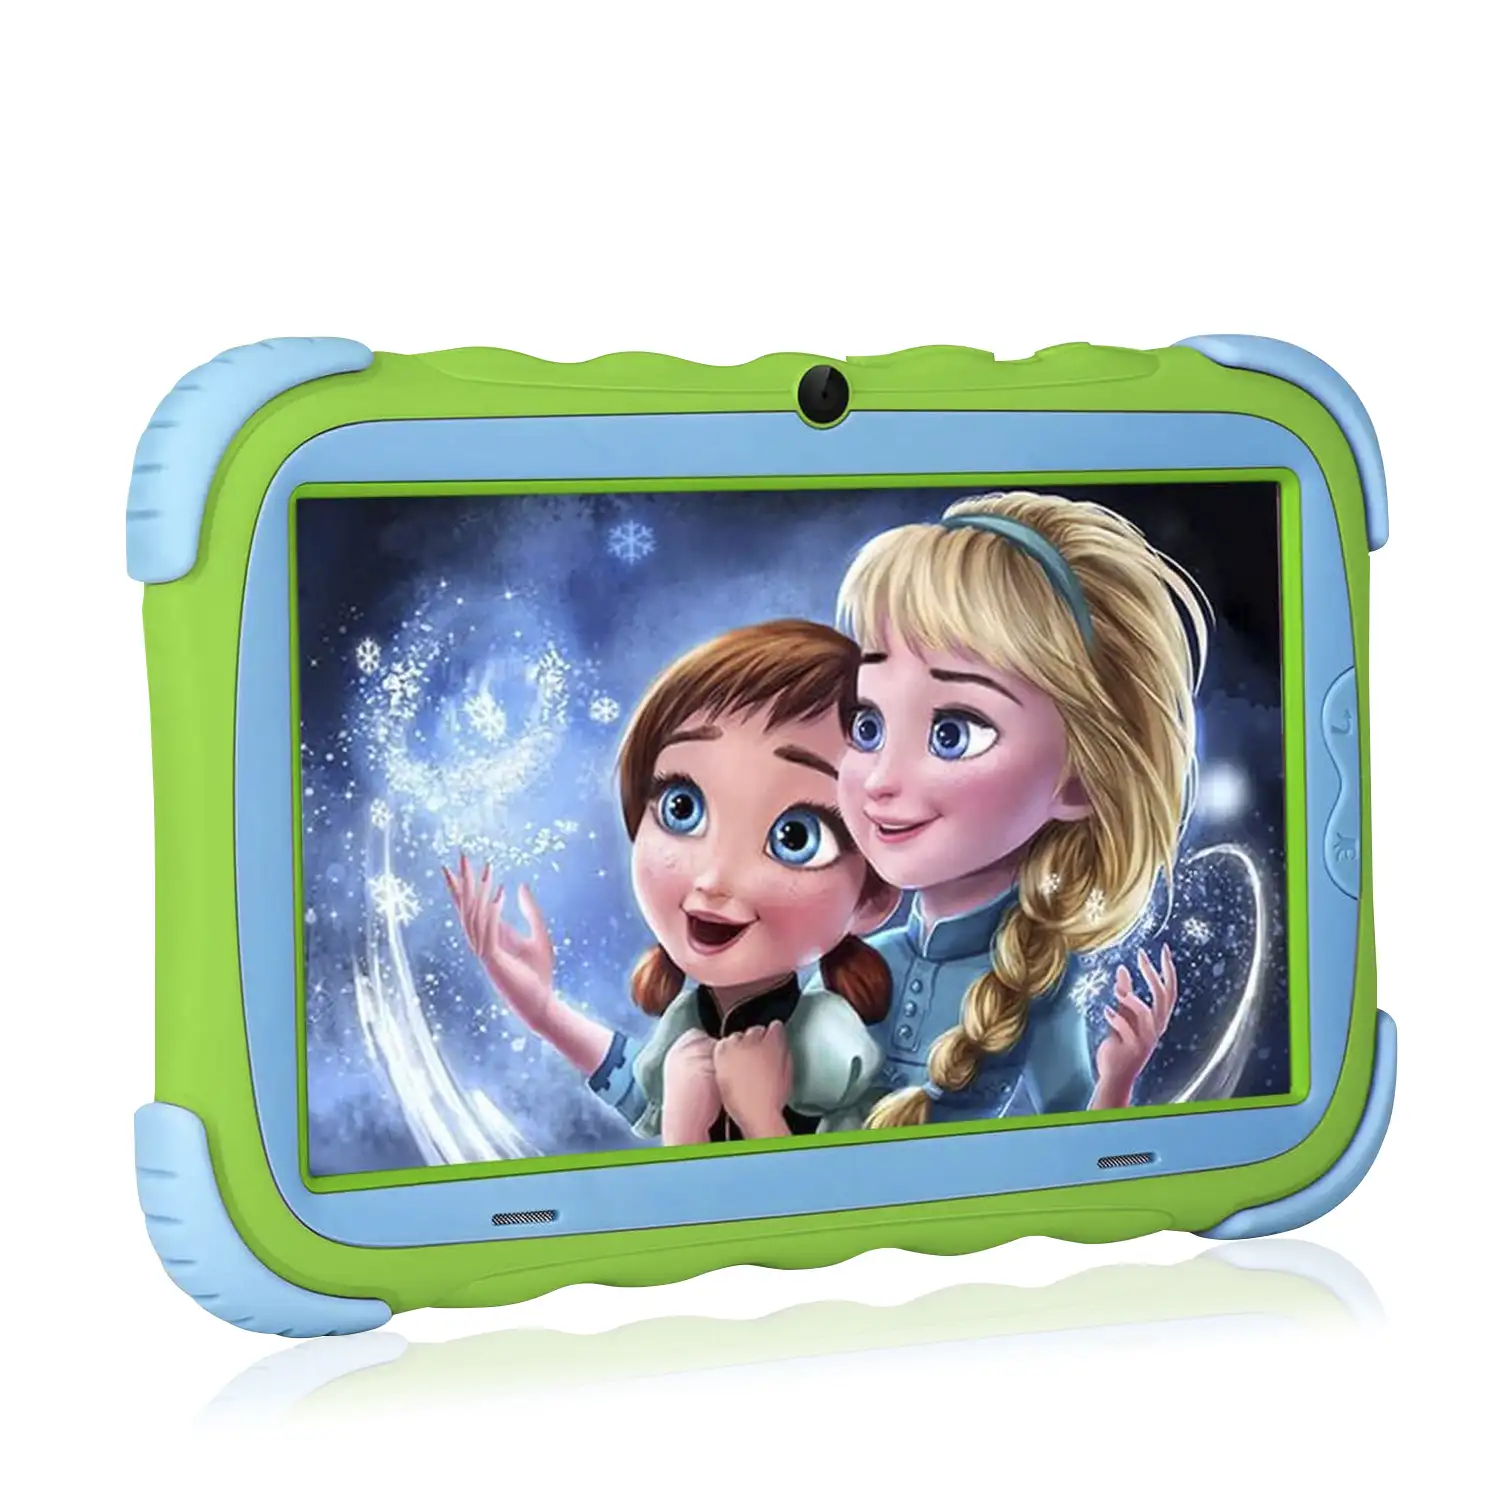 Tablet Infantil Y57, Quad Core Android 9.0, WiFi, con control parental y limitador de tiempo de uso, cámara doble y refuerzo antigolpes